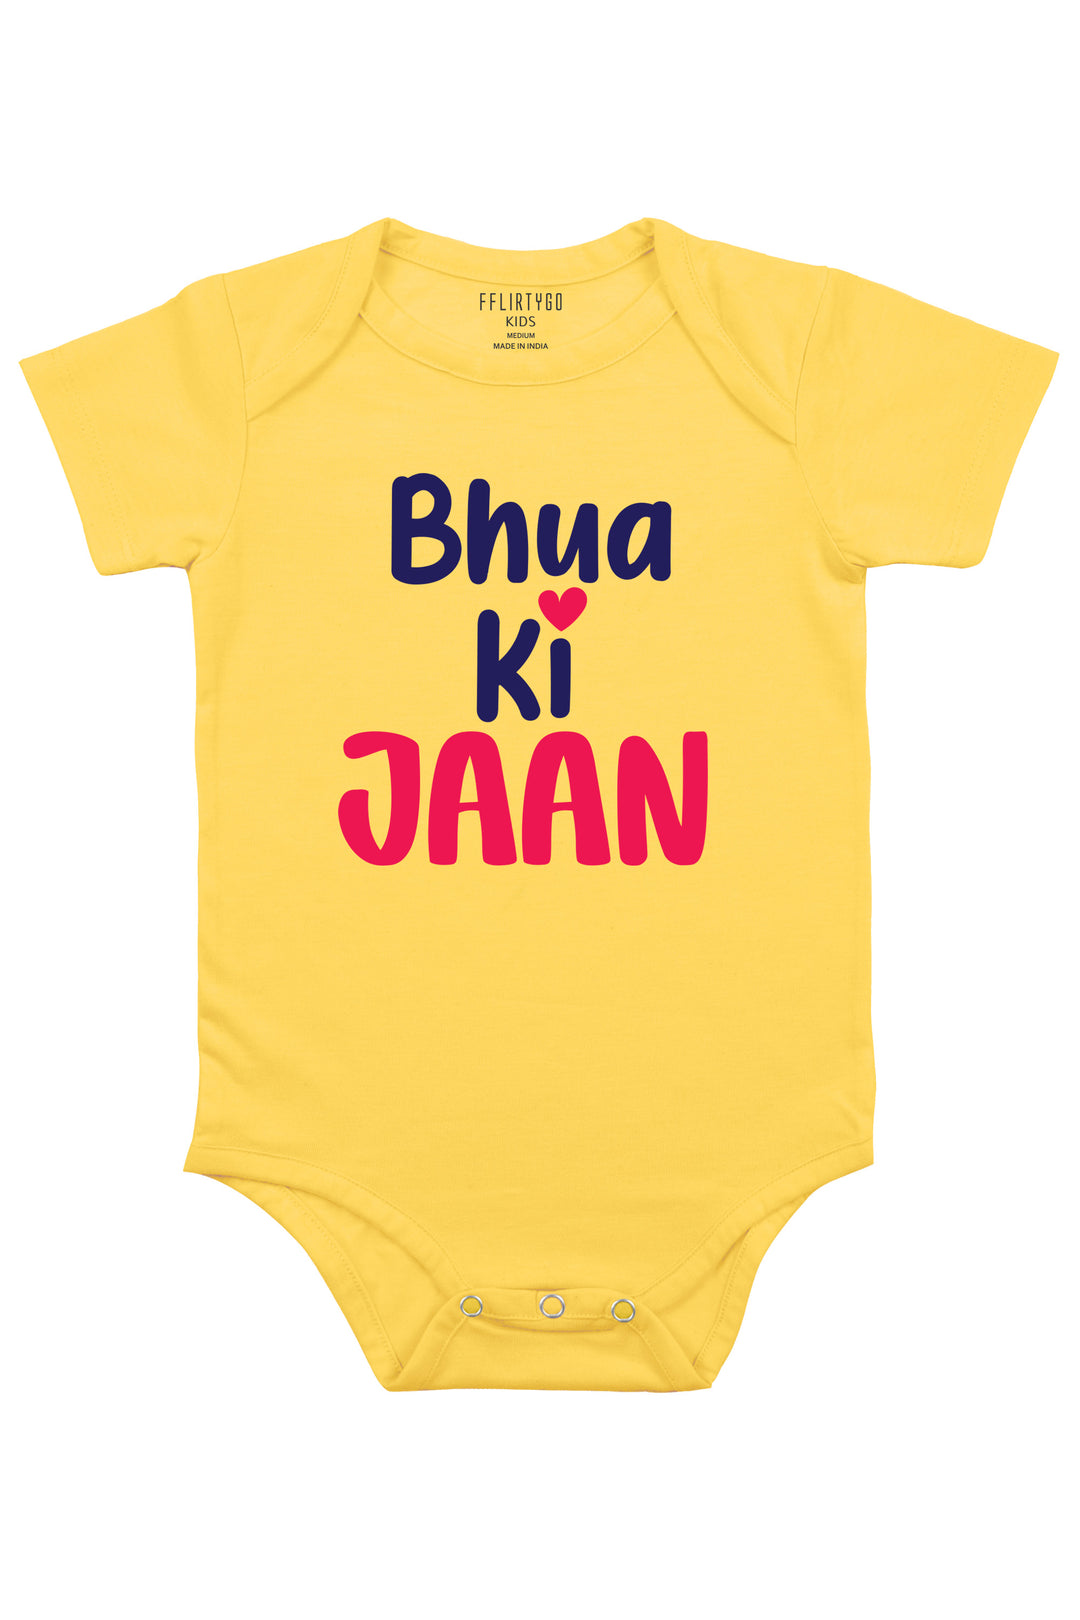 Bhua Ki Jaan Baby Romper | Onesies